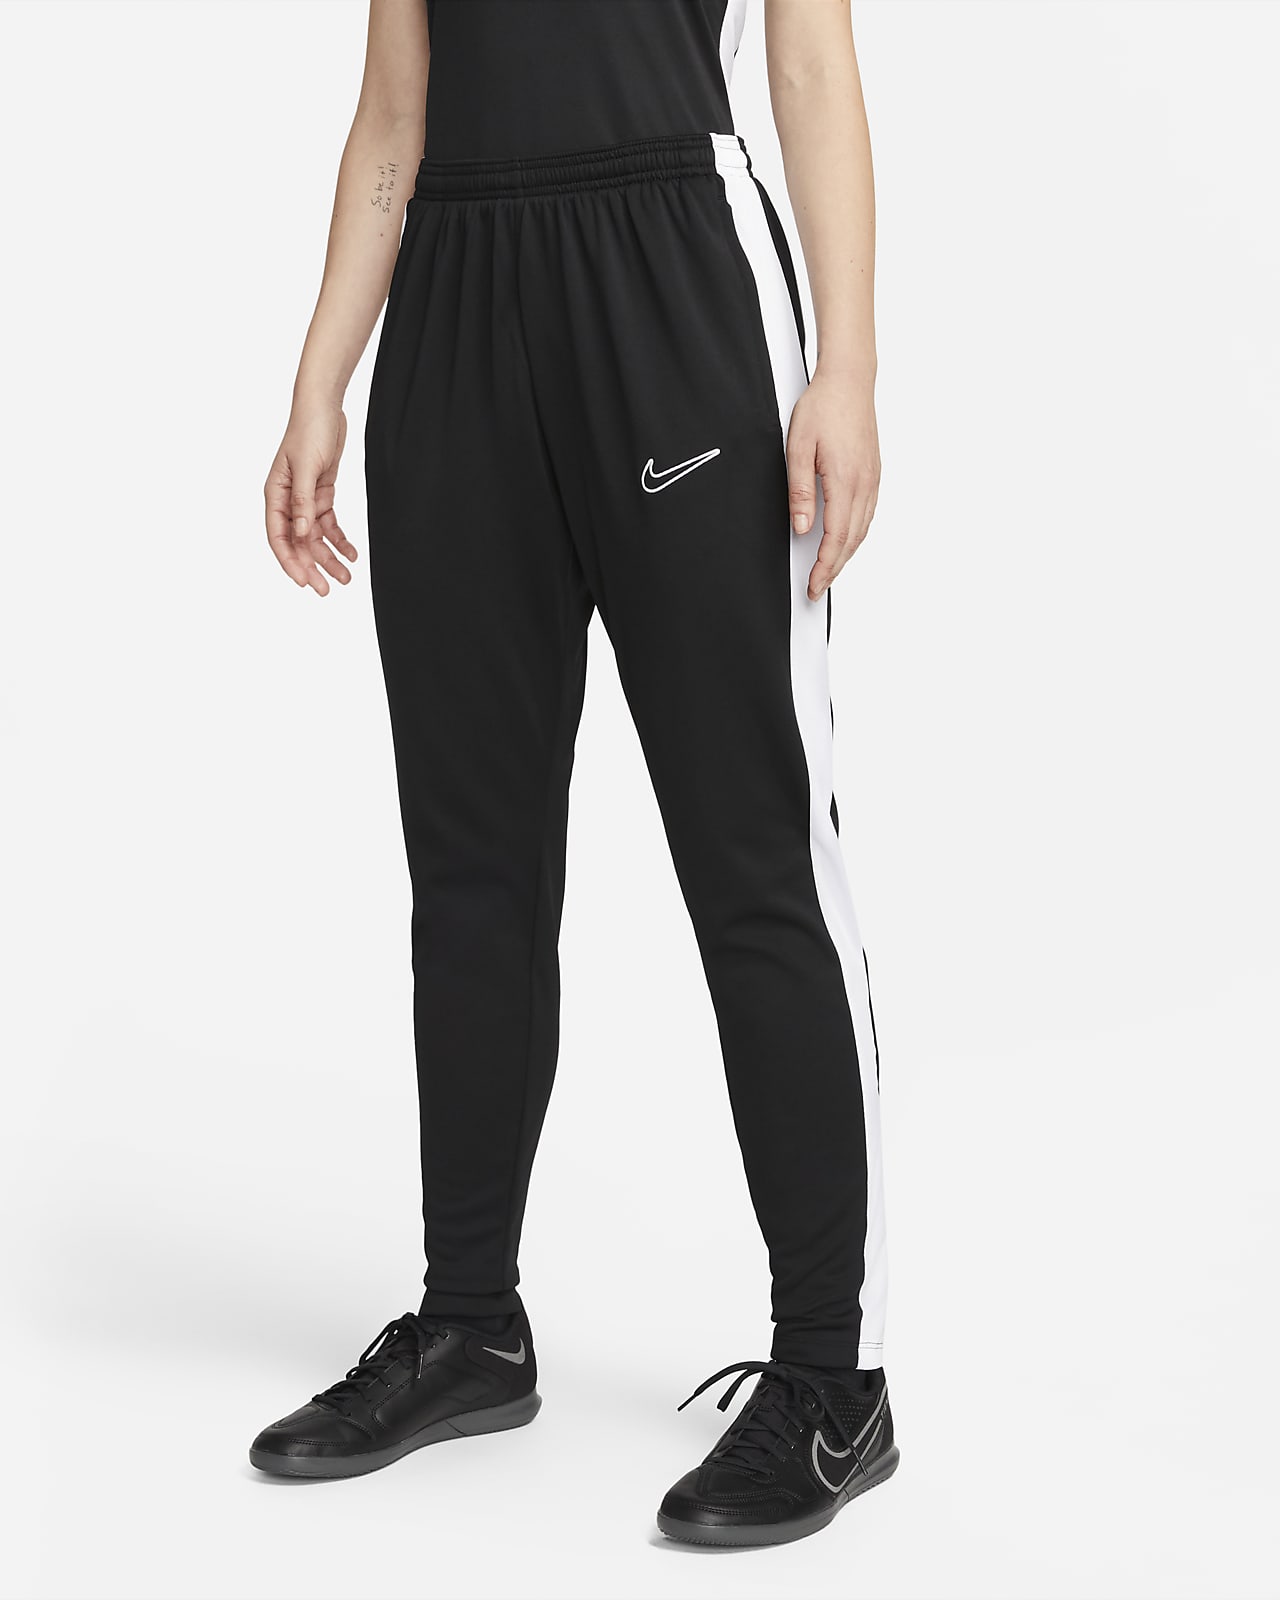 Γυναικείο ποδοσφαιρικό παντελόνι Nike Dri-FIT Academy